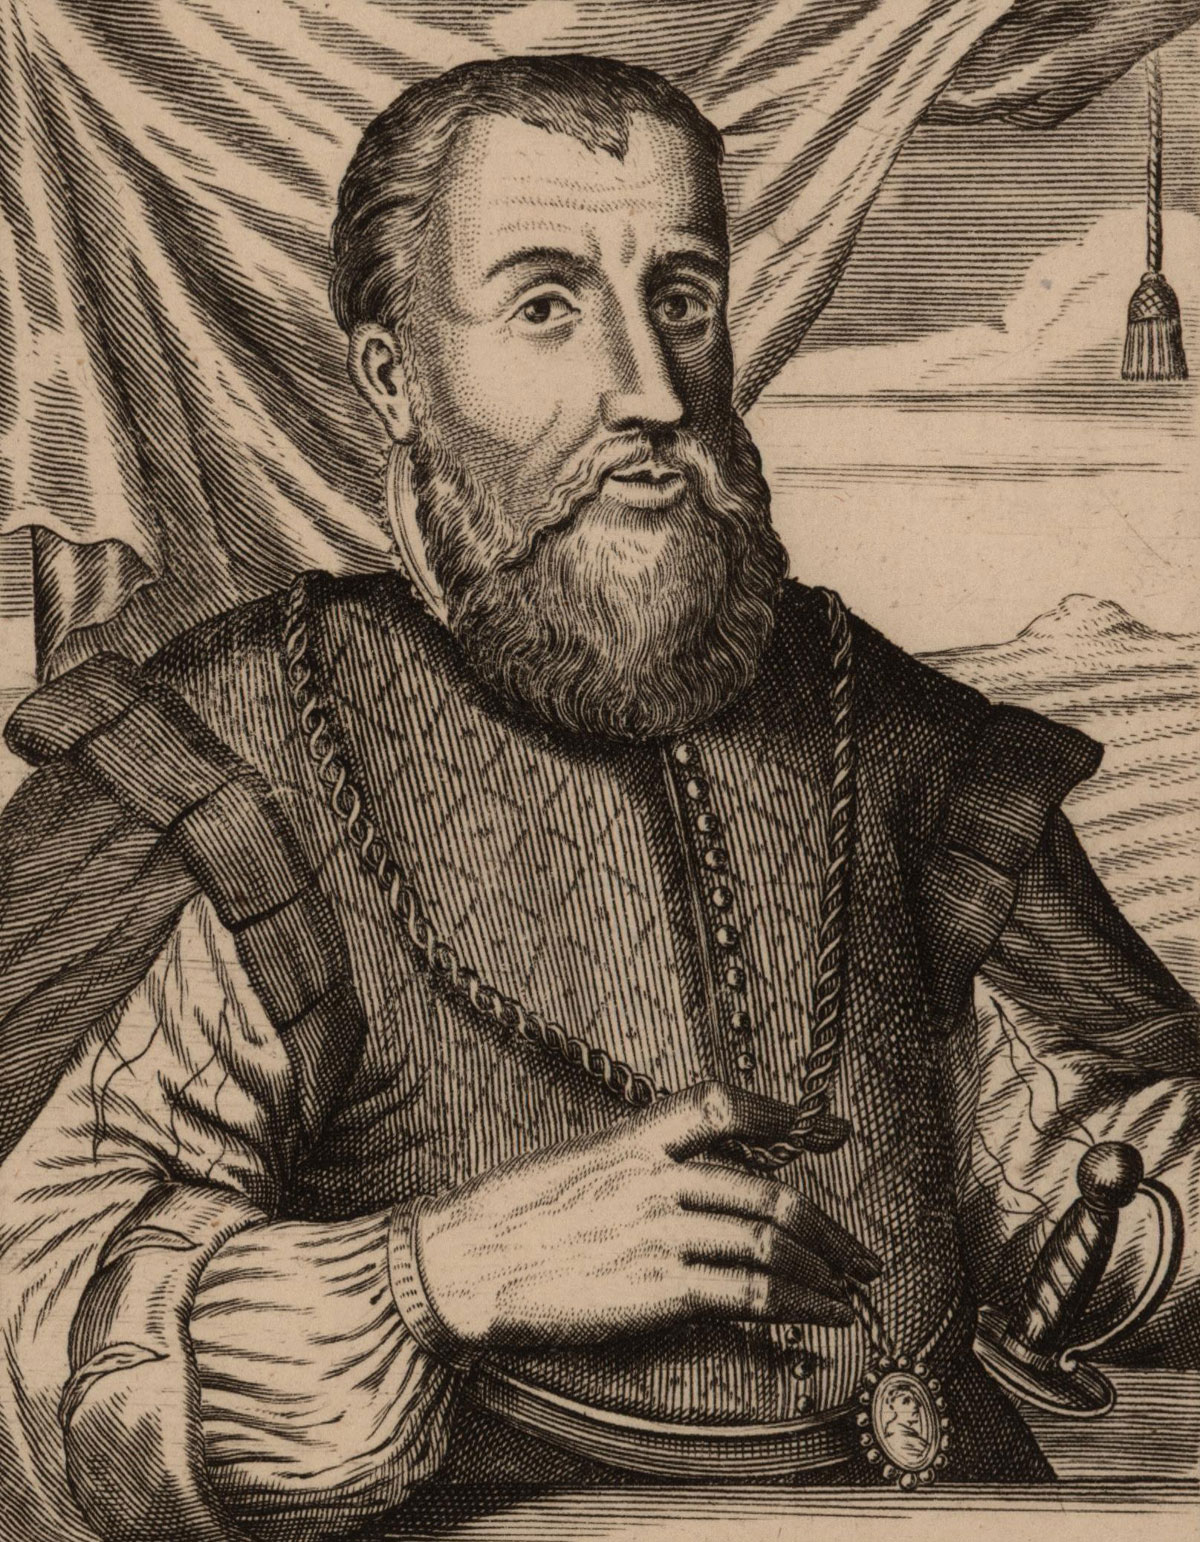 Diego Velázquez de Cuellar